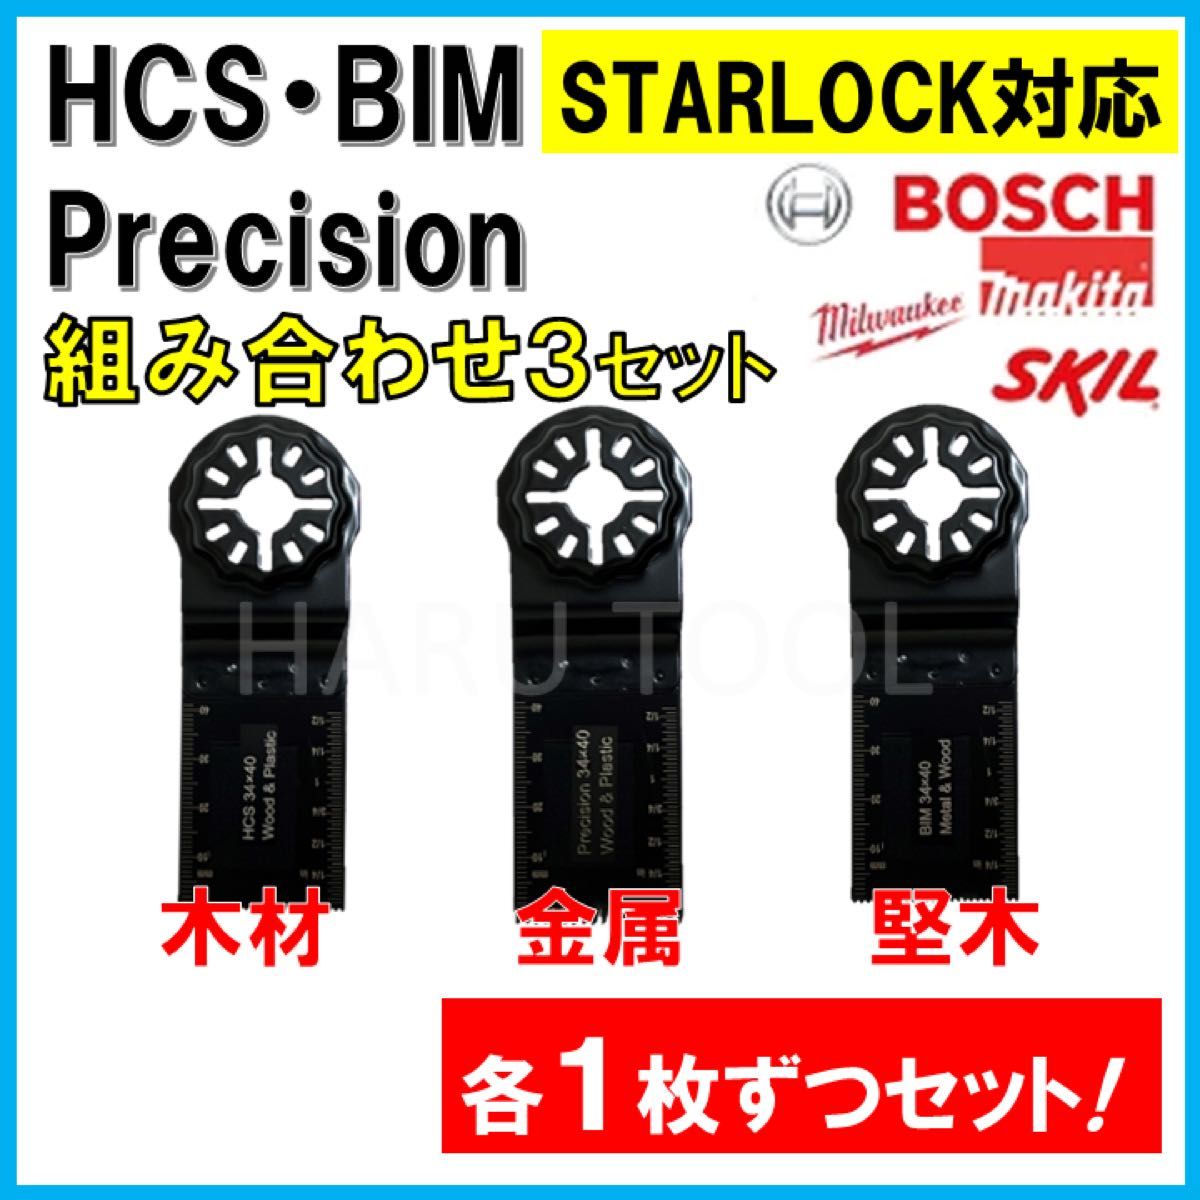 3枚 HCS BIM Precision 替刃 木材 金属 コンパネ マルチツール スターロック マキタ ボッシュ BOSCH